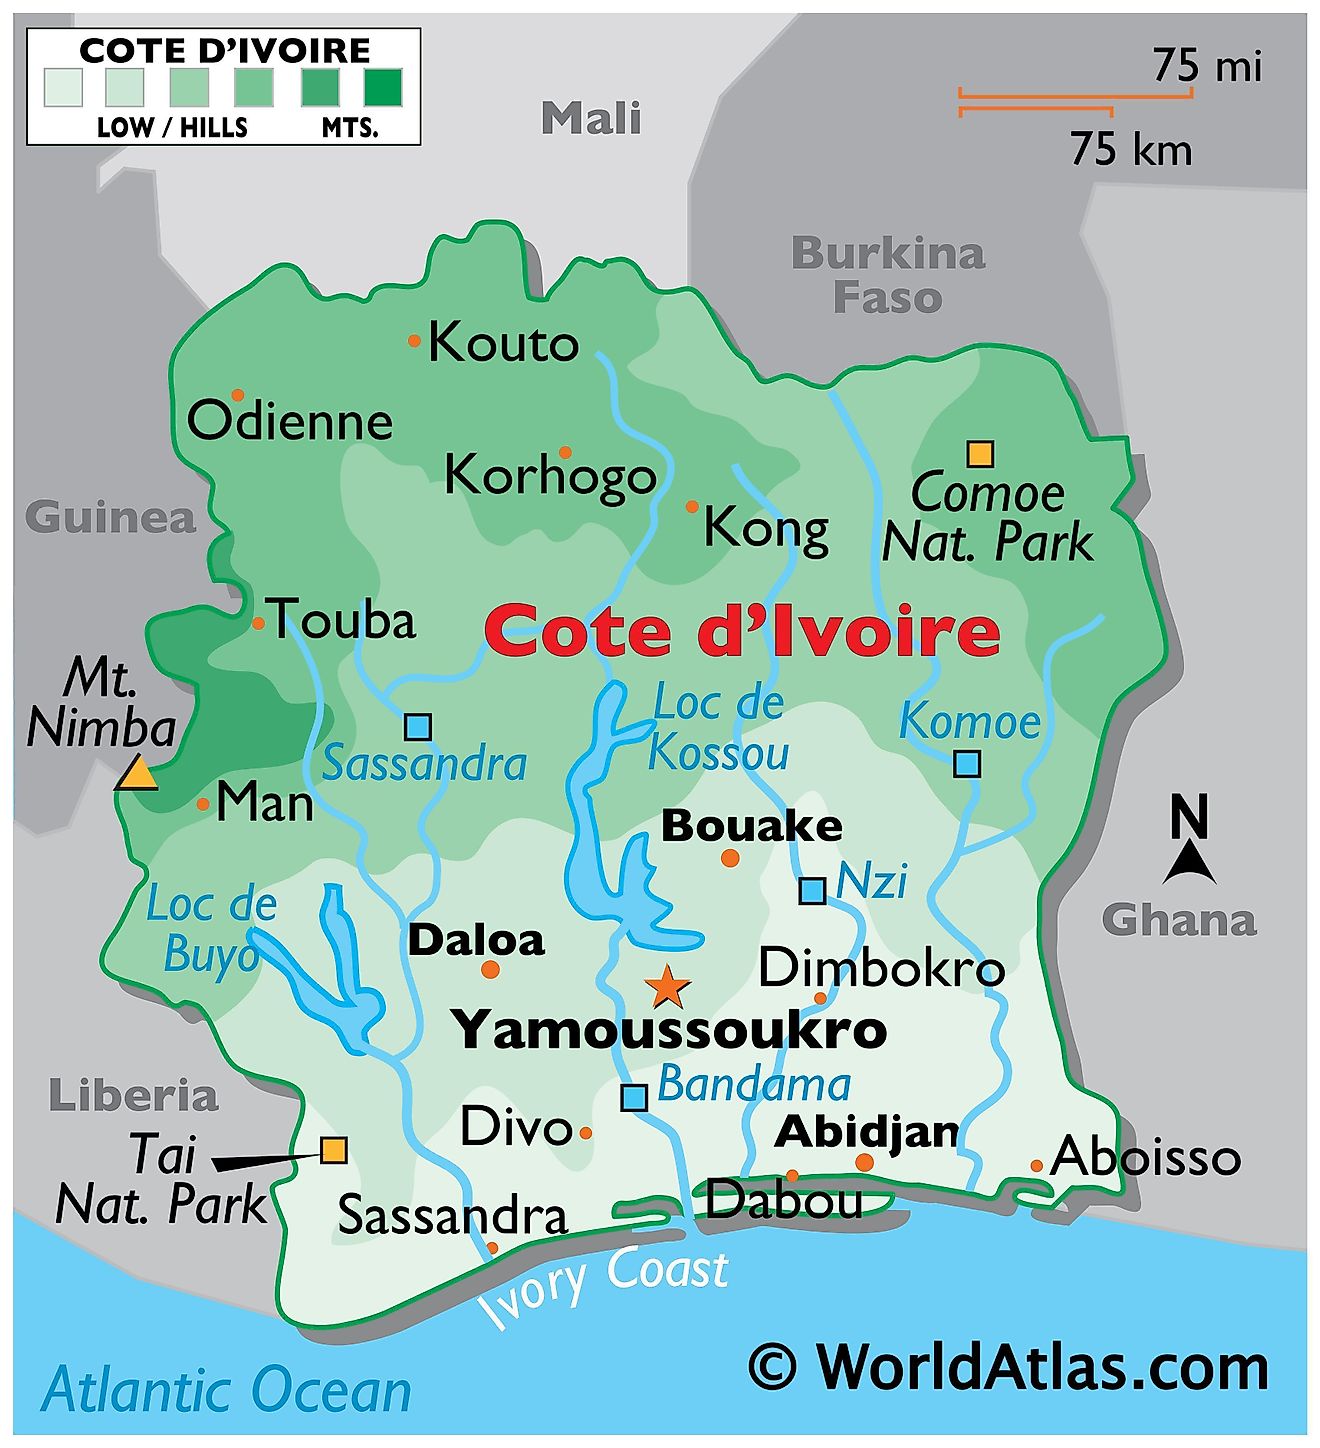 Mapa físico de Costa de Marfil que muestra los límites estatales, el relieve, los principales ríos, lagos, parques nacionales, la montaña más alta y las ciudades importantes.